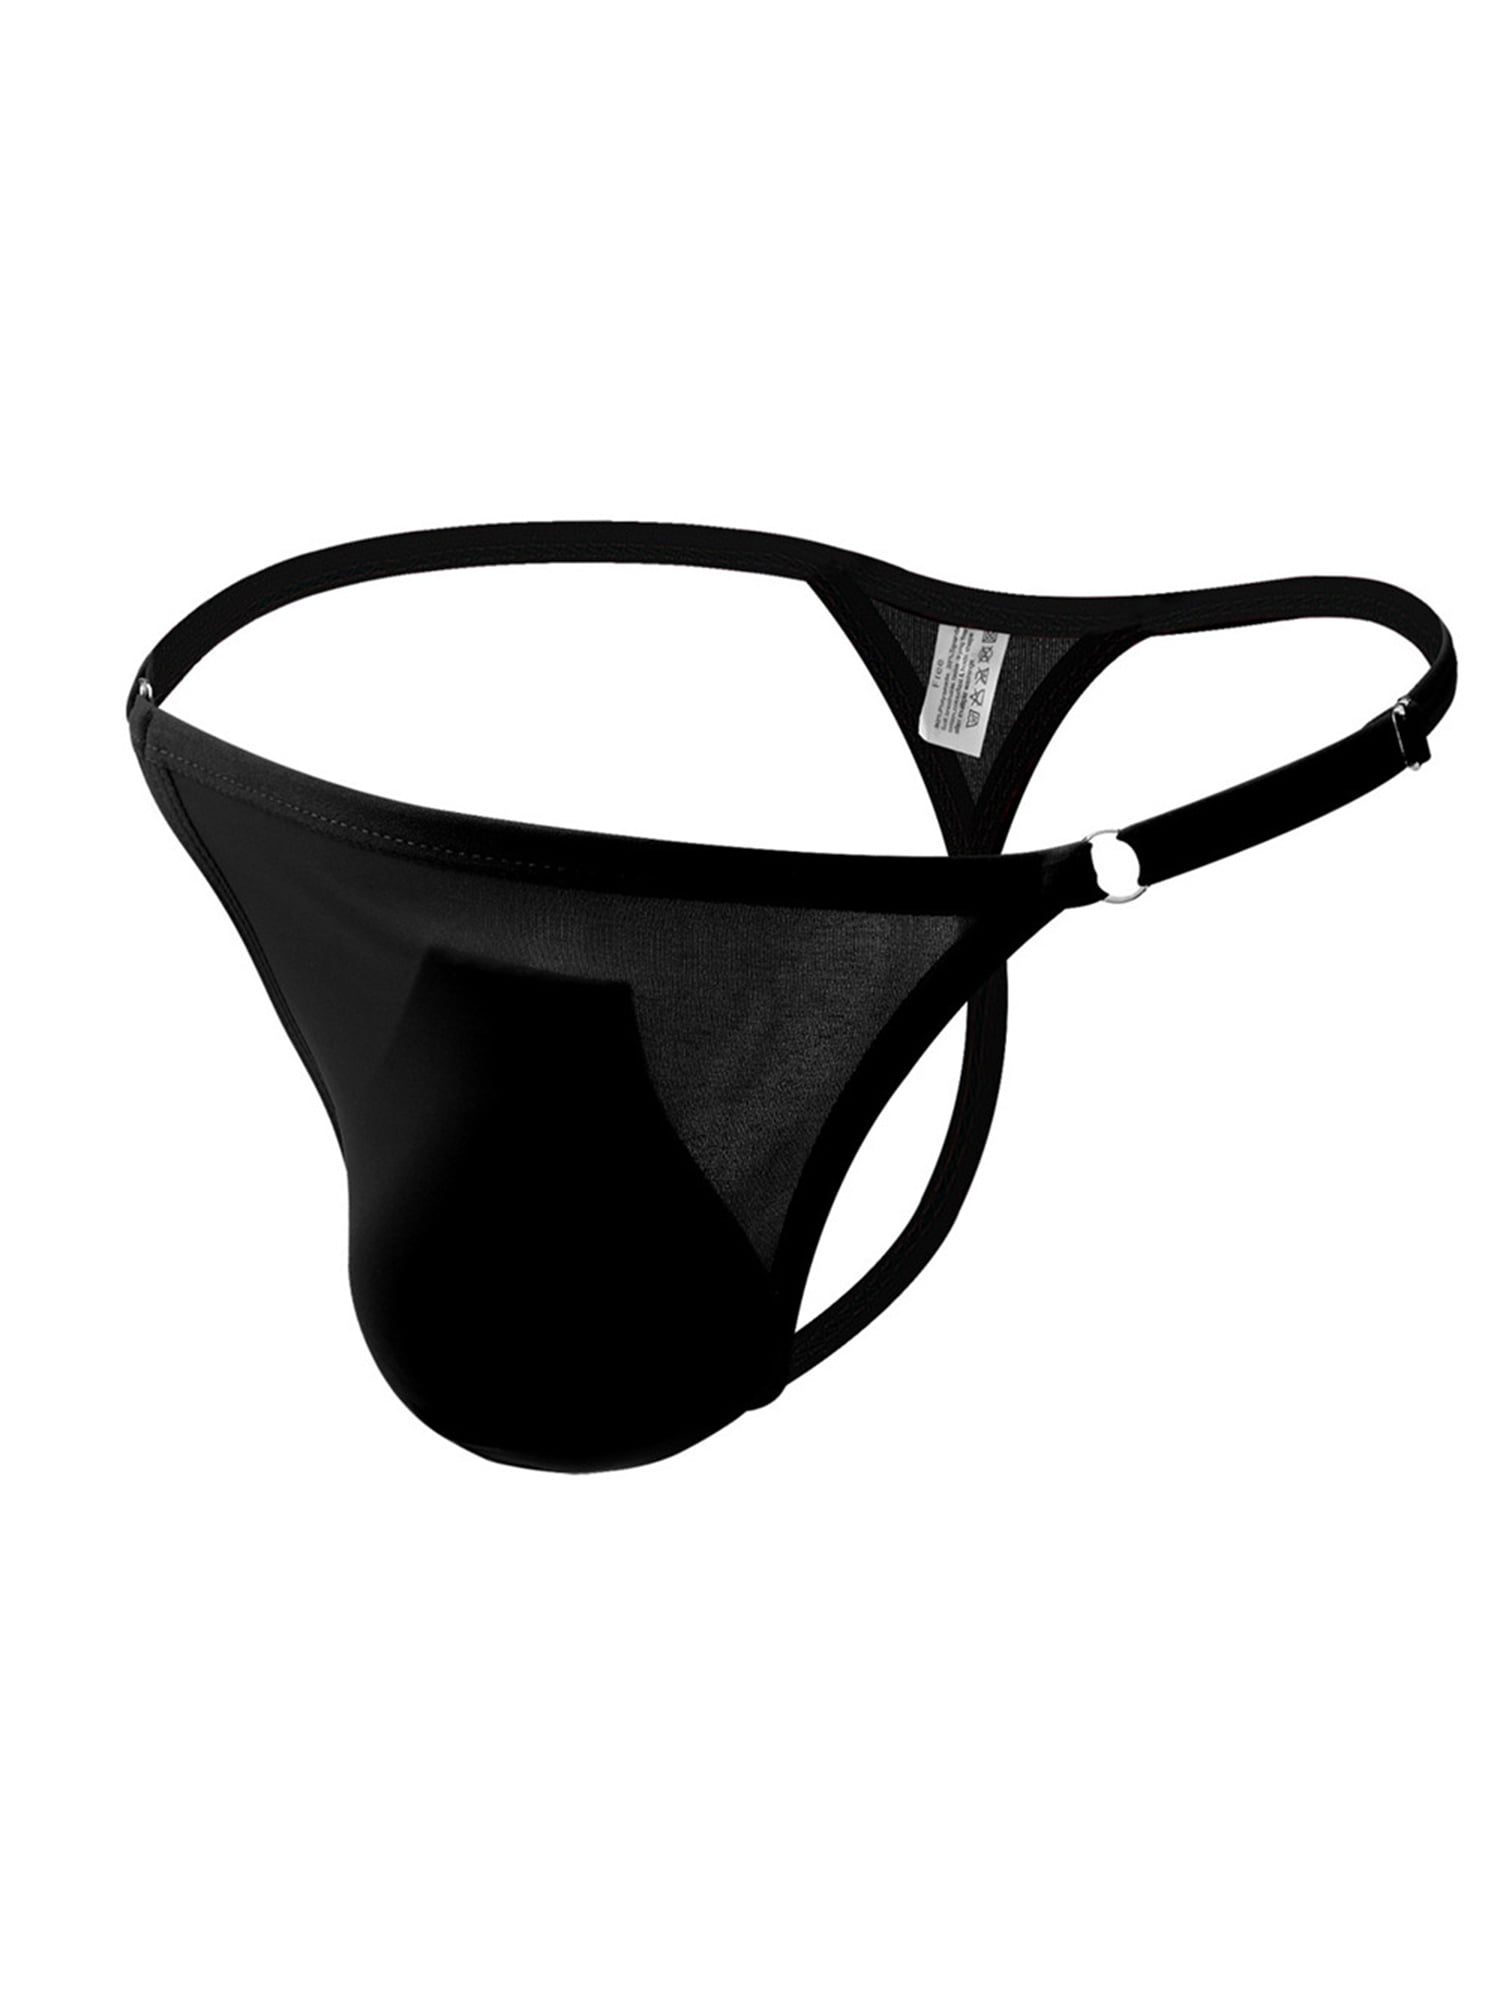 KAMAMEN Mens Sexy G-String T-back Adjustable Underwear Bluge Pouch ...